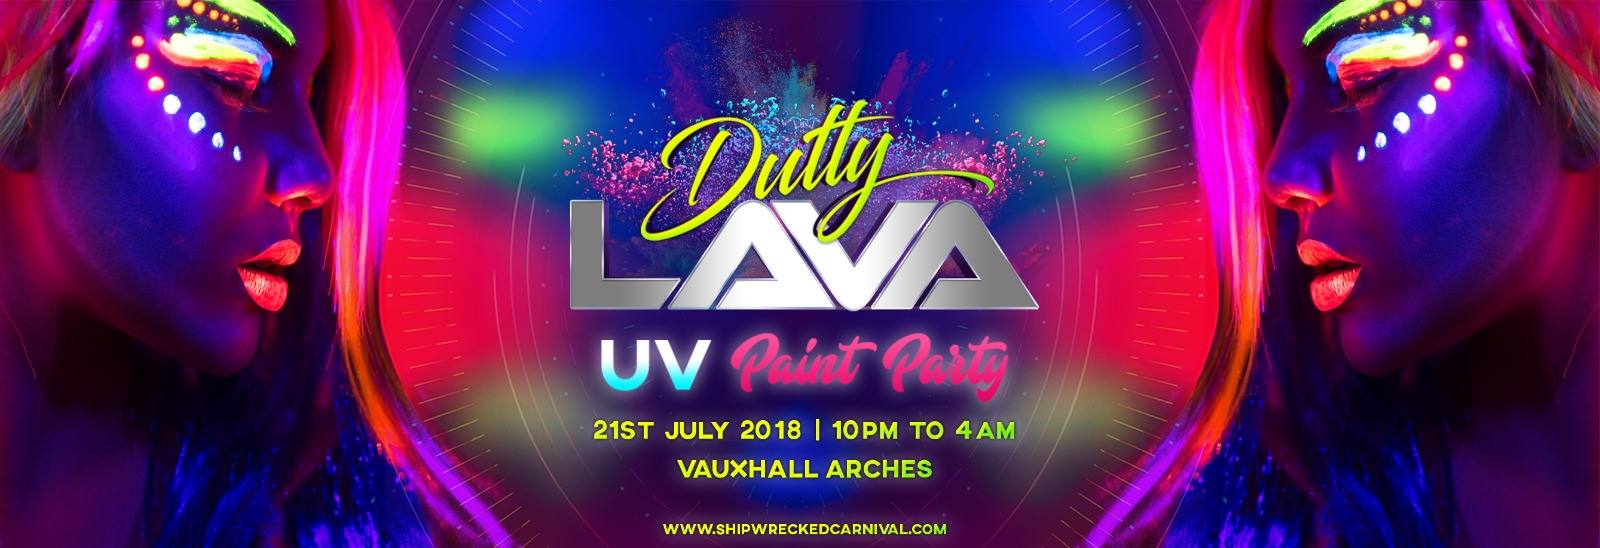 lava UV Paint Party